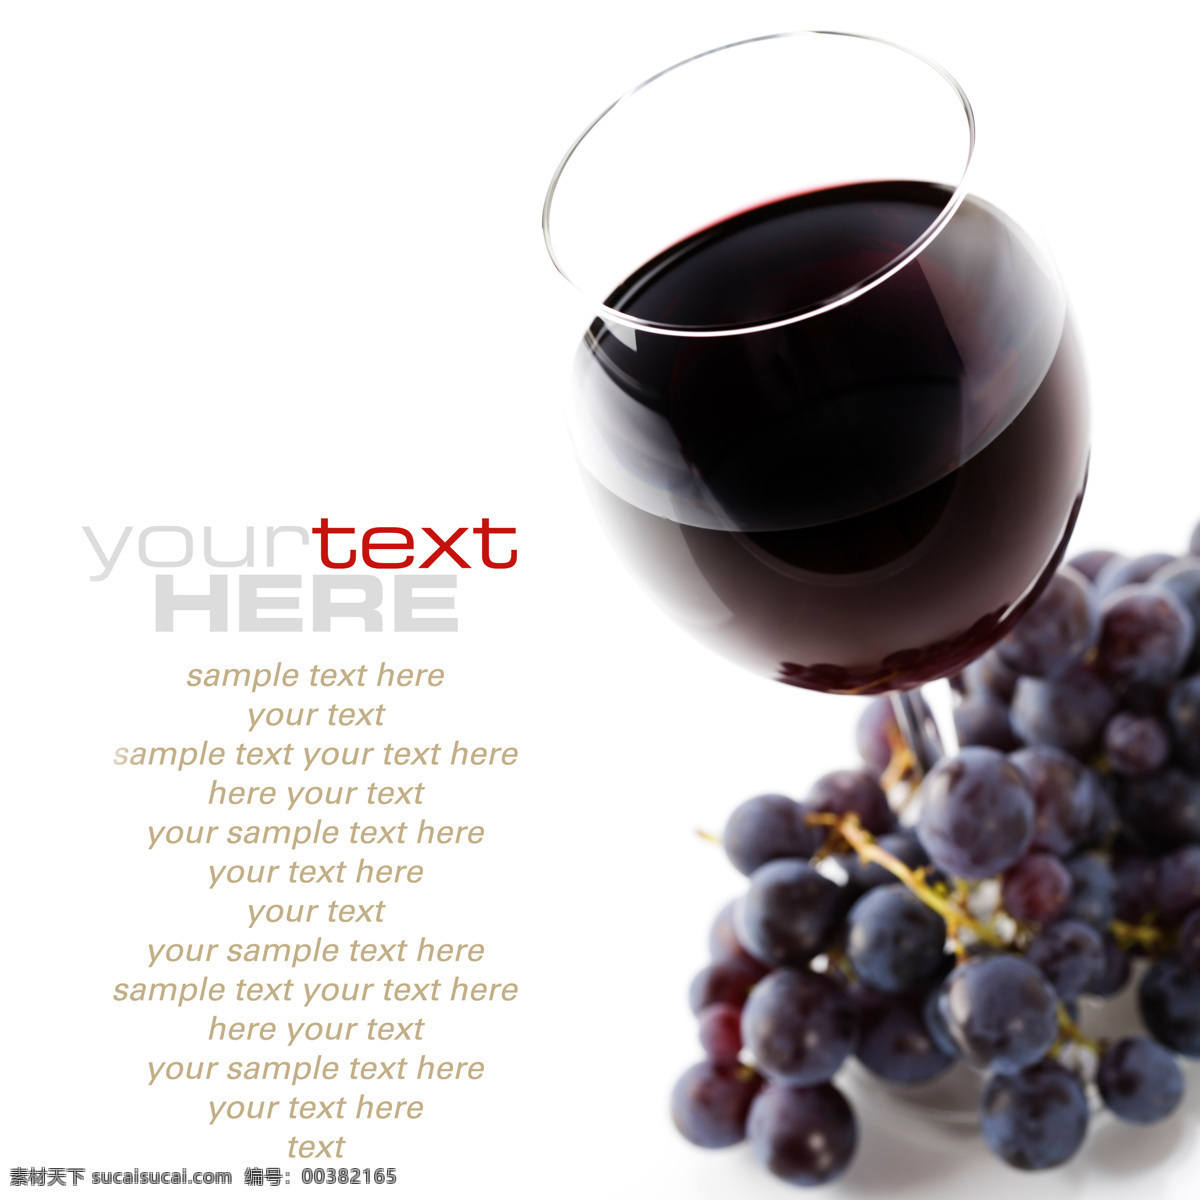 葡萄与葡萄酒 酒 葡萄酒 红酒 杯子 葡萄 餐饮美食 饮料酒水 葡萄酒红酒 摄影图 酒水饮料 白色